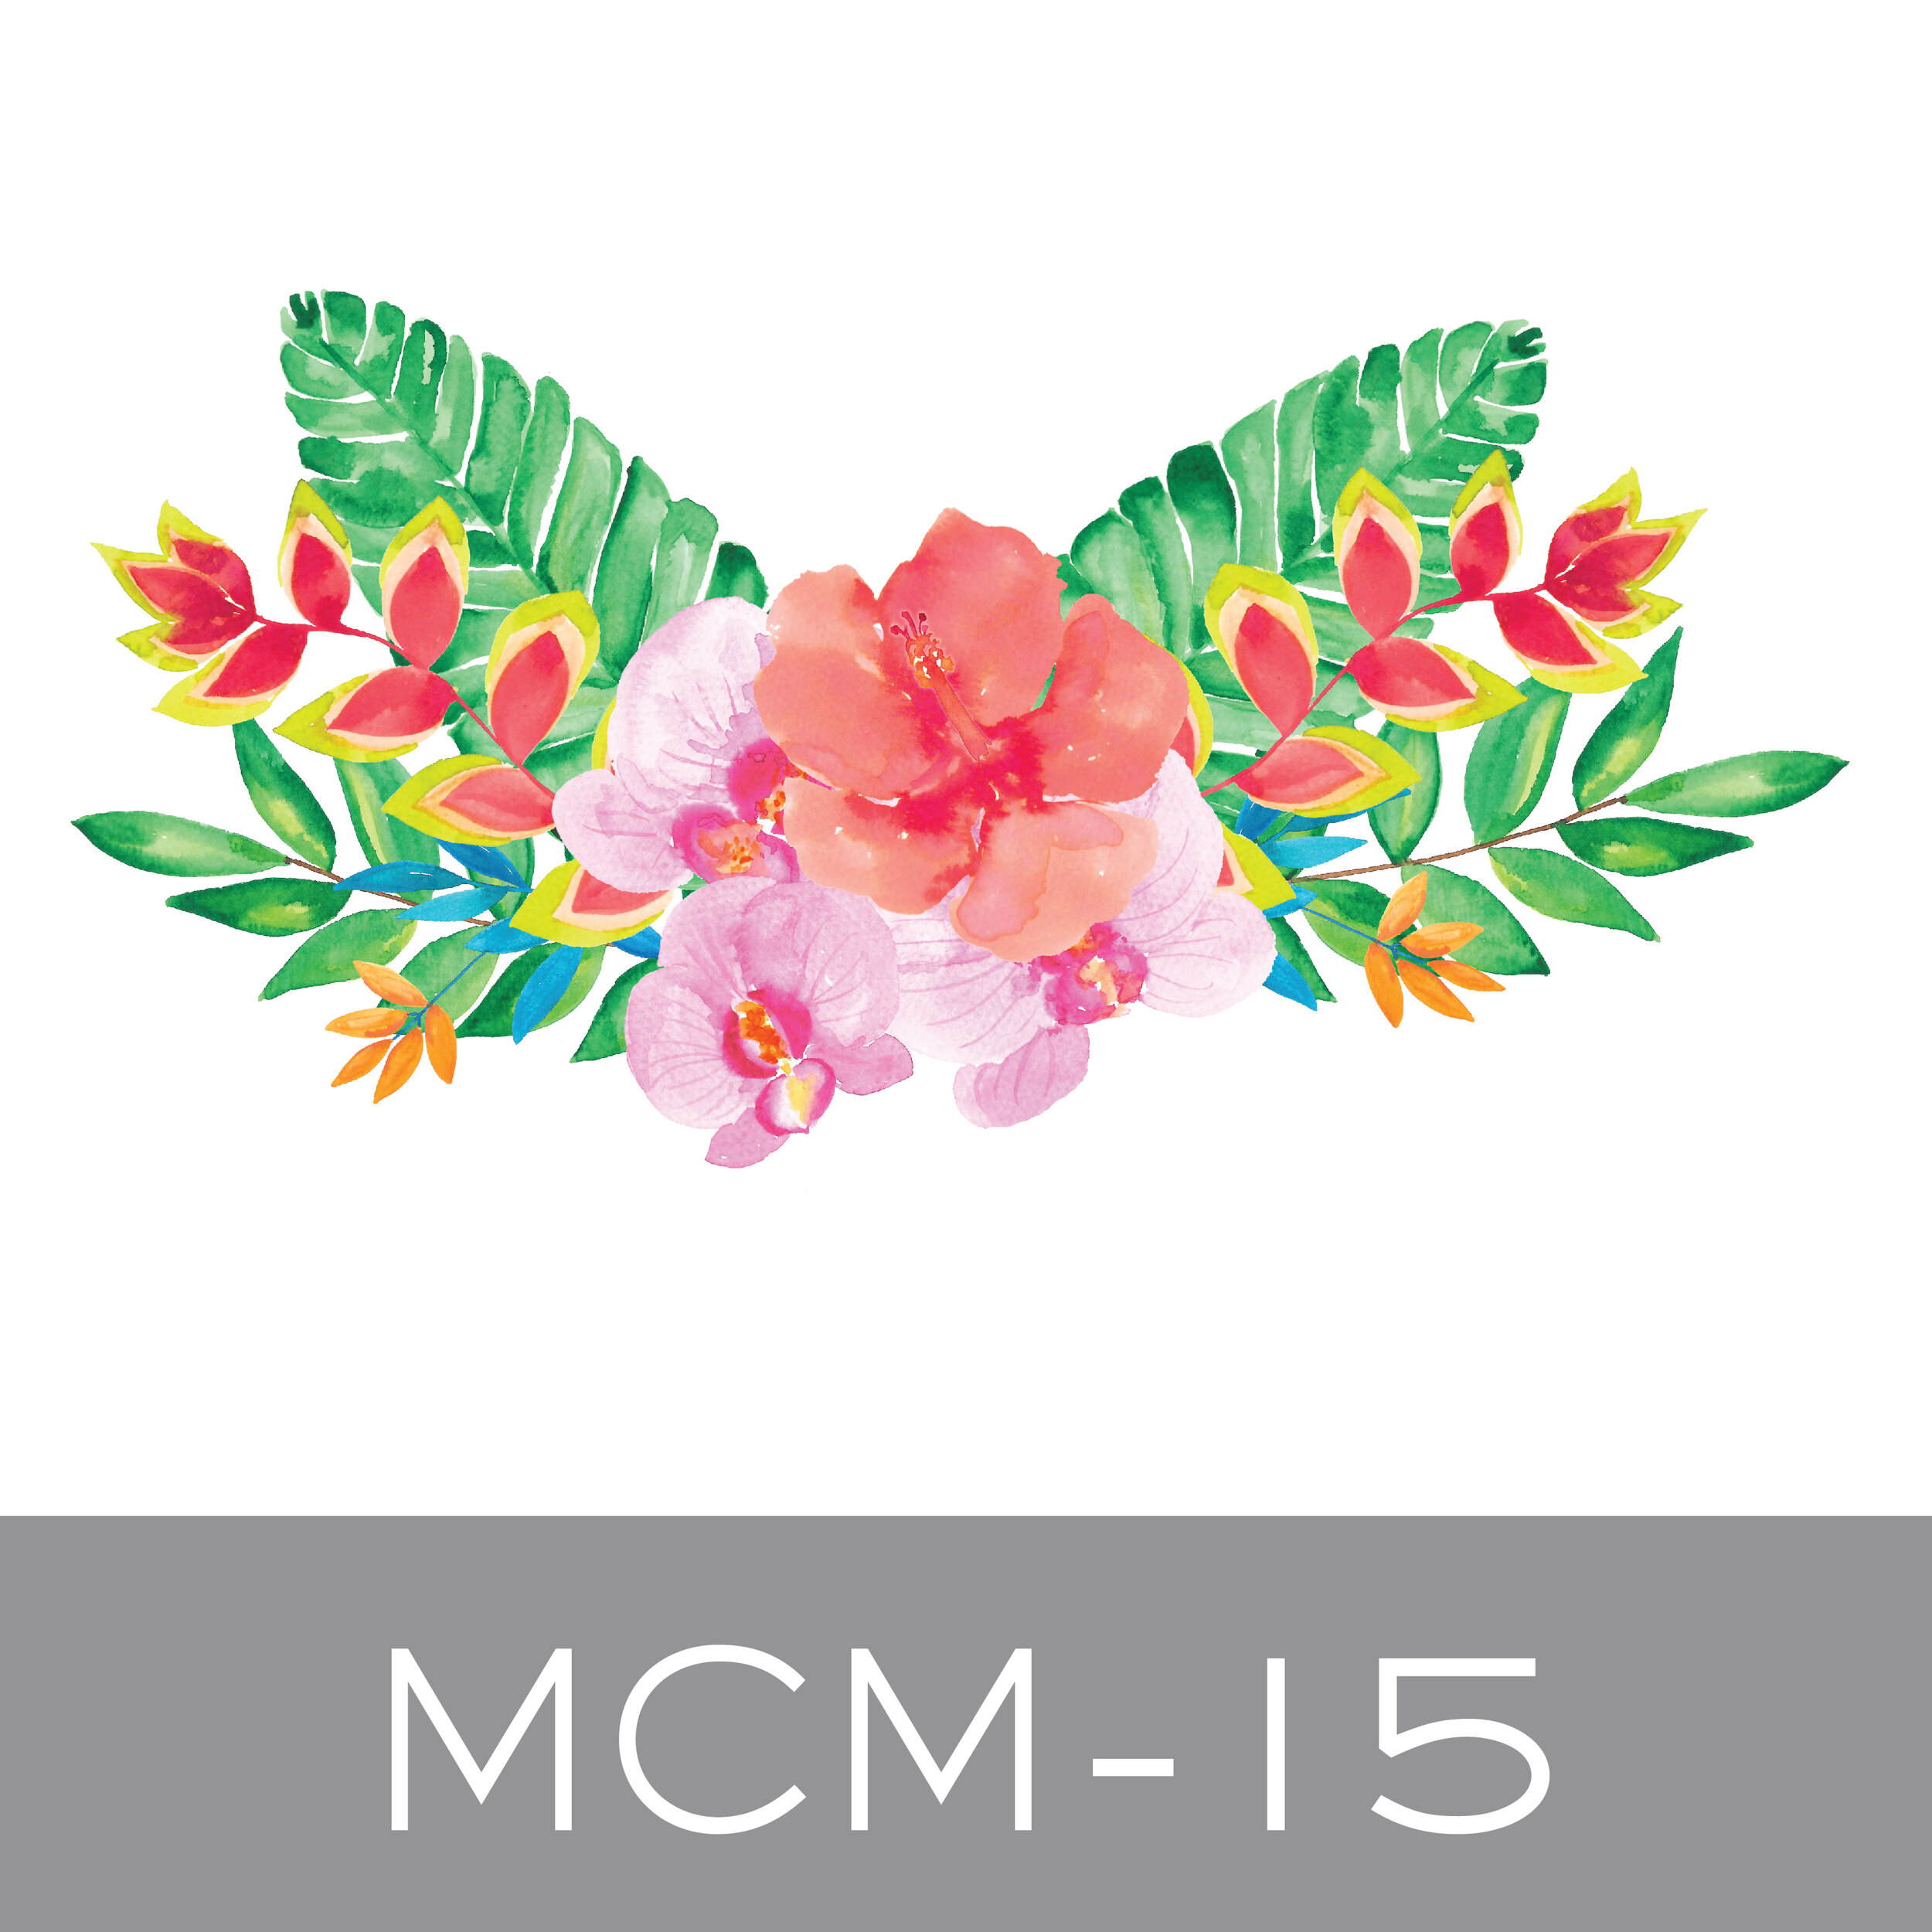 MCM-15.jpg